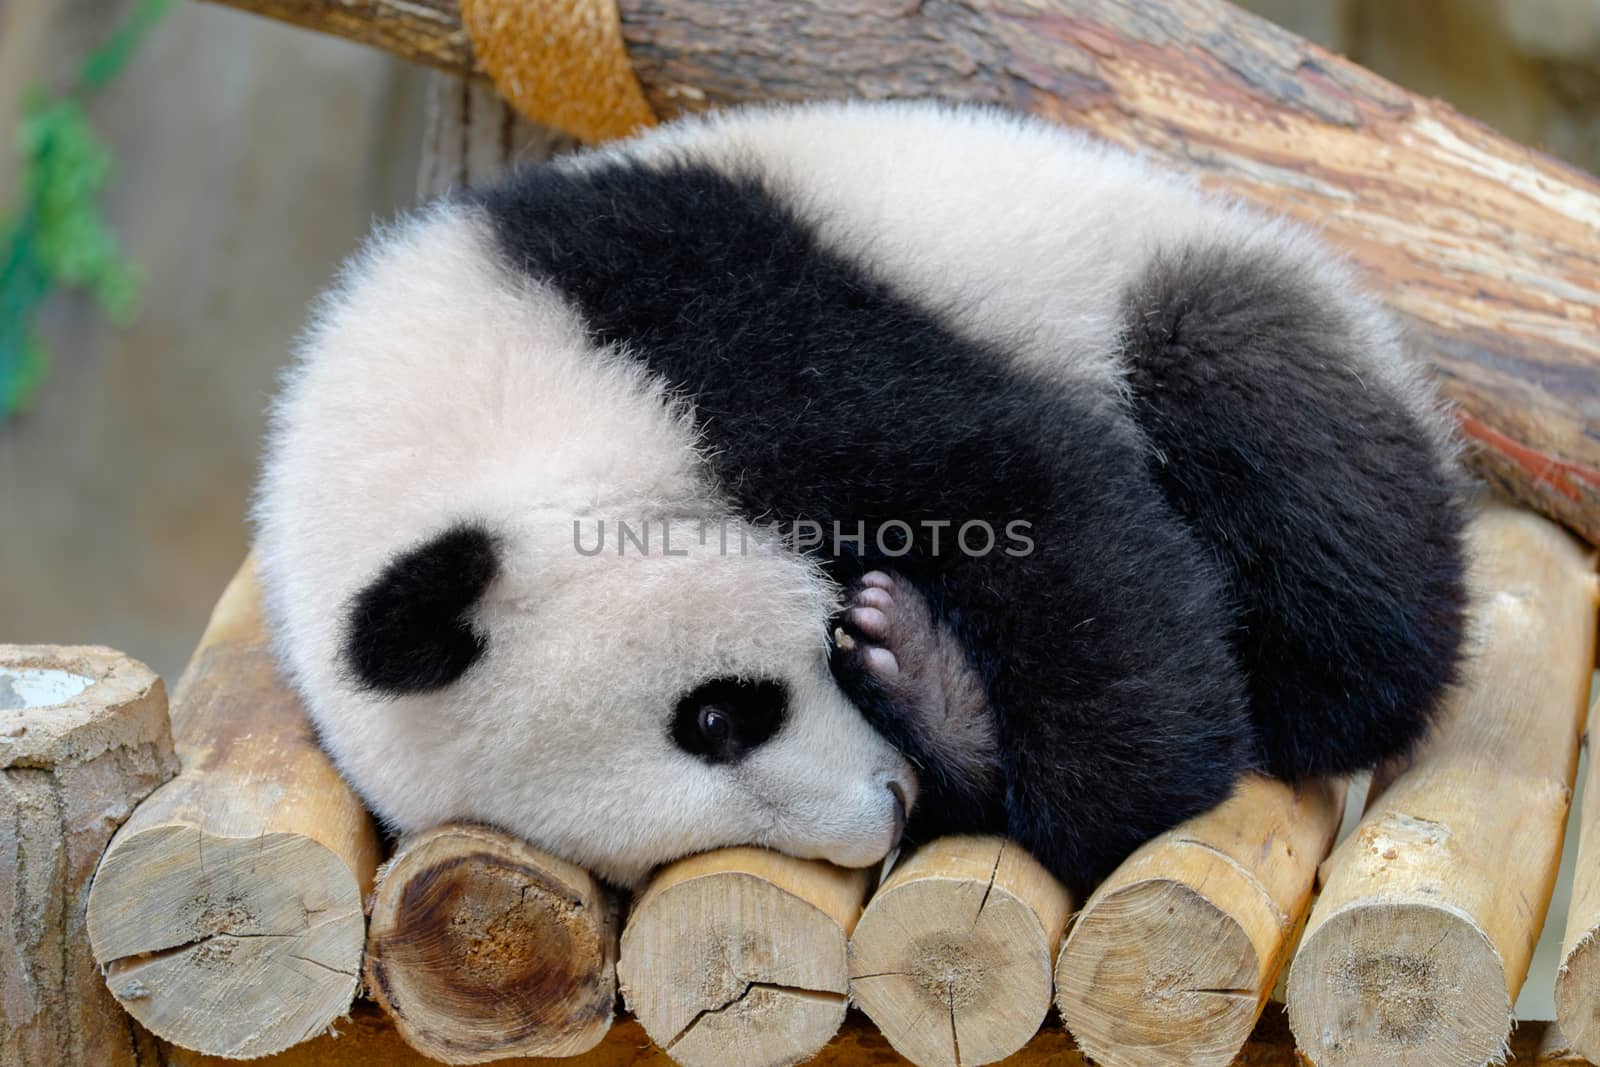 Baby panda hugs his leg